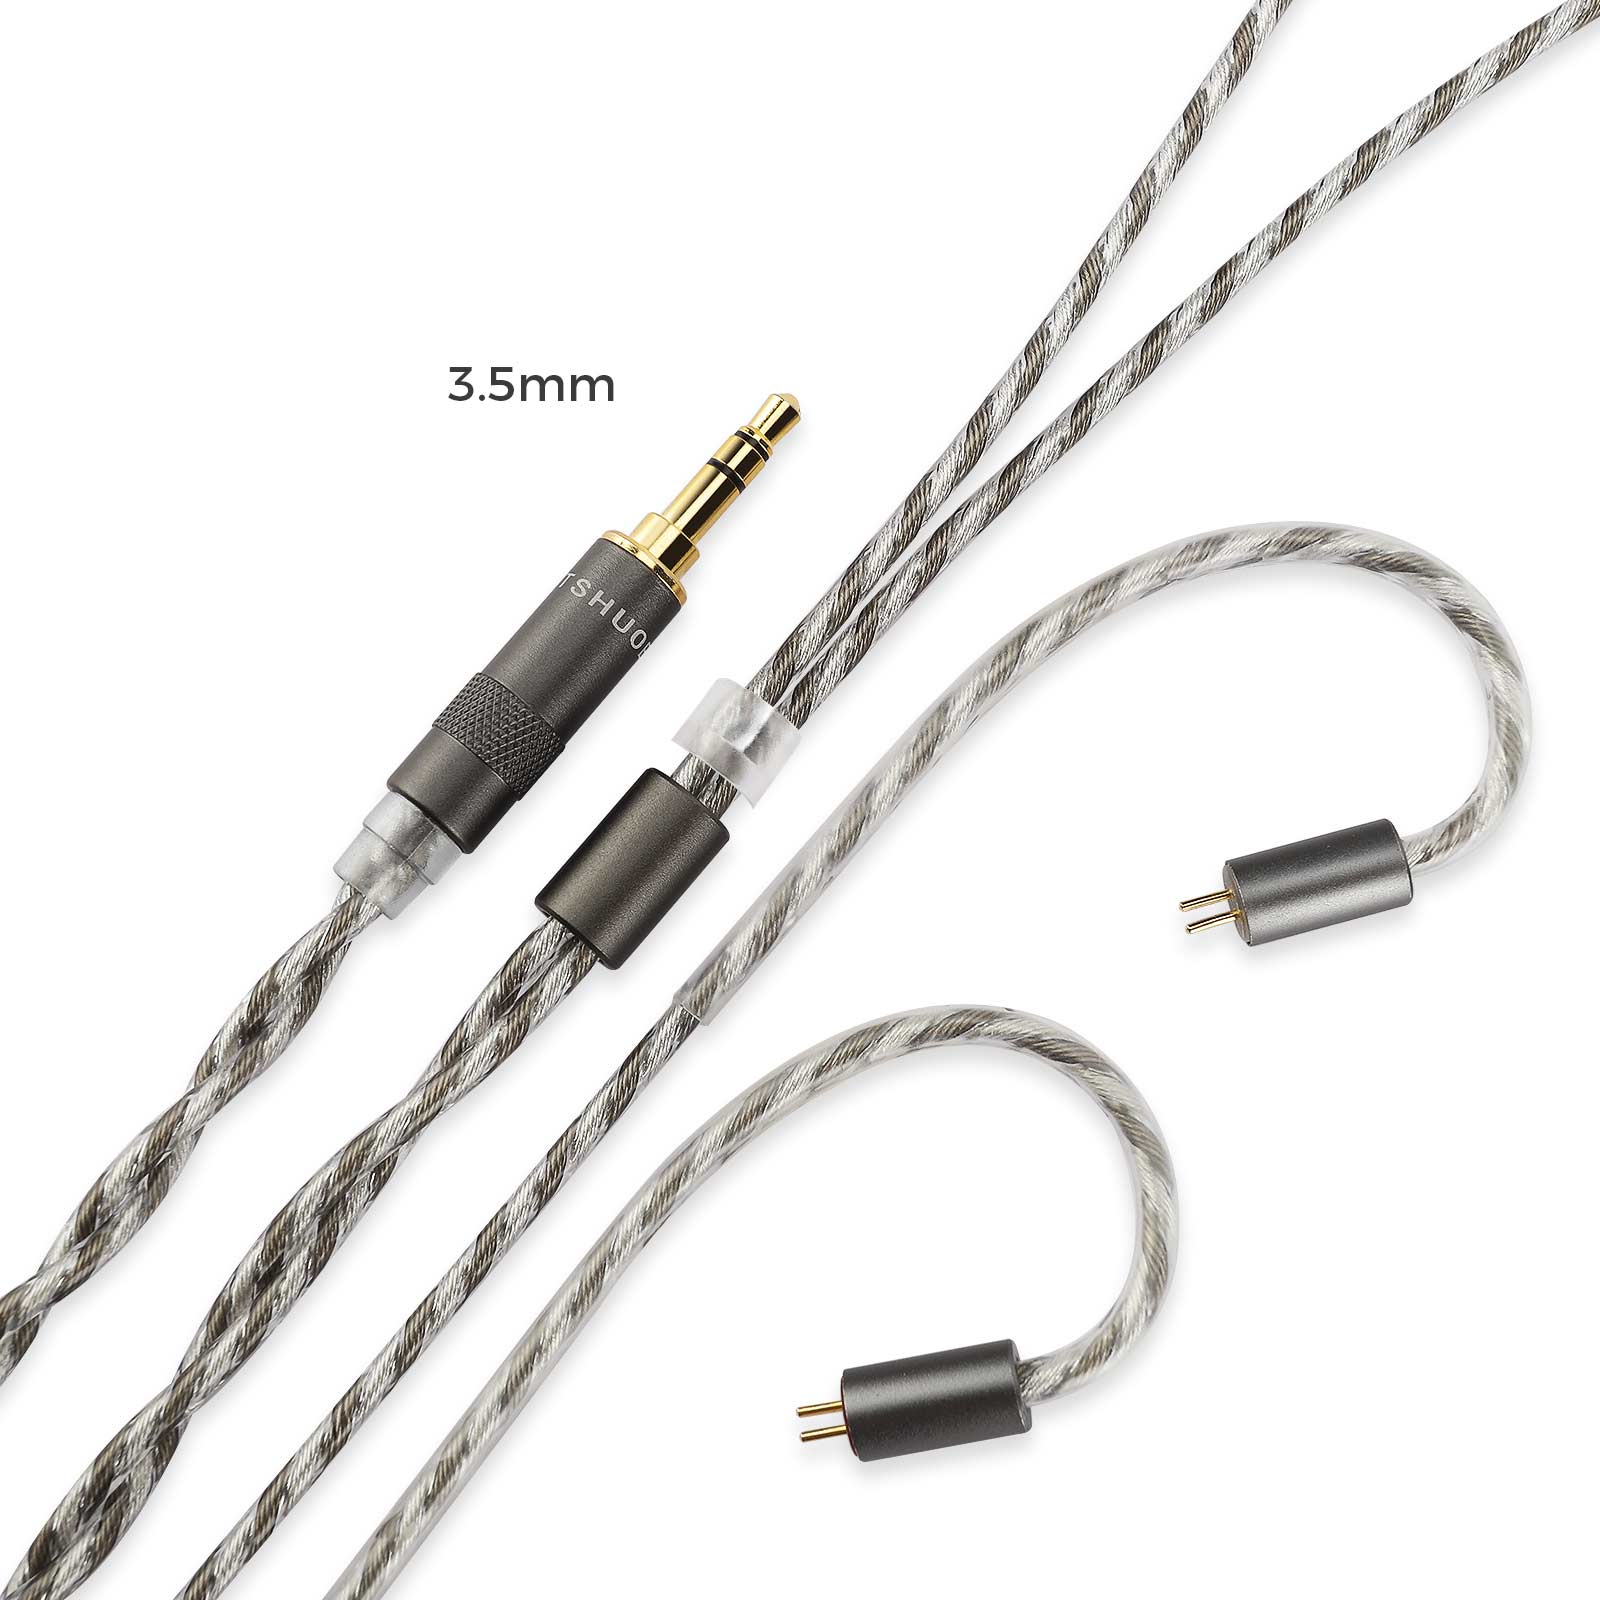 LETSHUOER S12 Audio 3.5mm Kabel oder 4.4mm symmetrische Kopfhörerkabel mit 2-poligem Stecker 128 Litzen versilbertes Kupferkabel